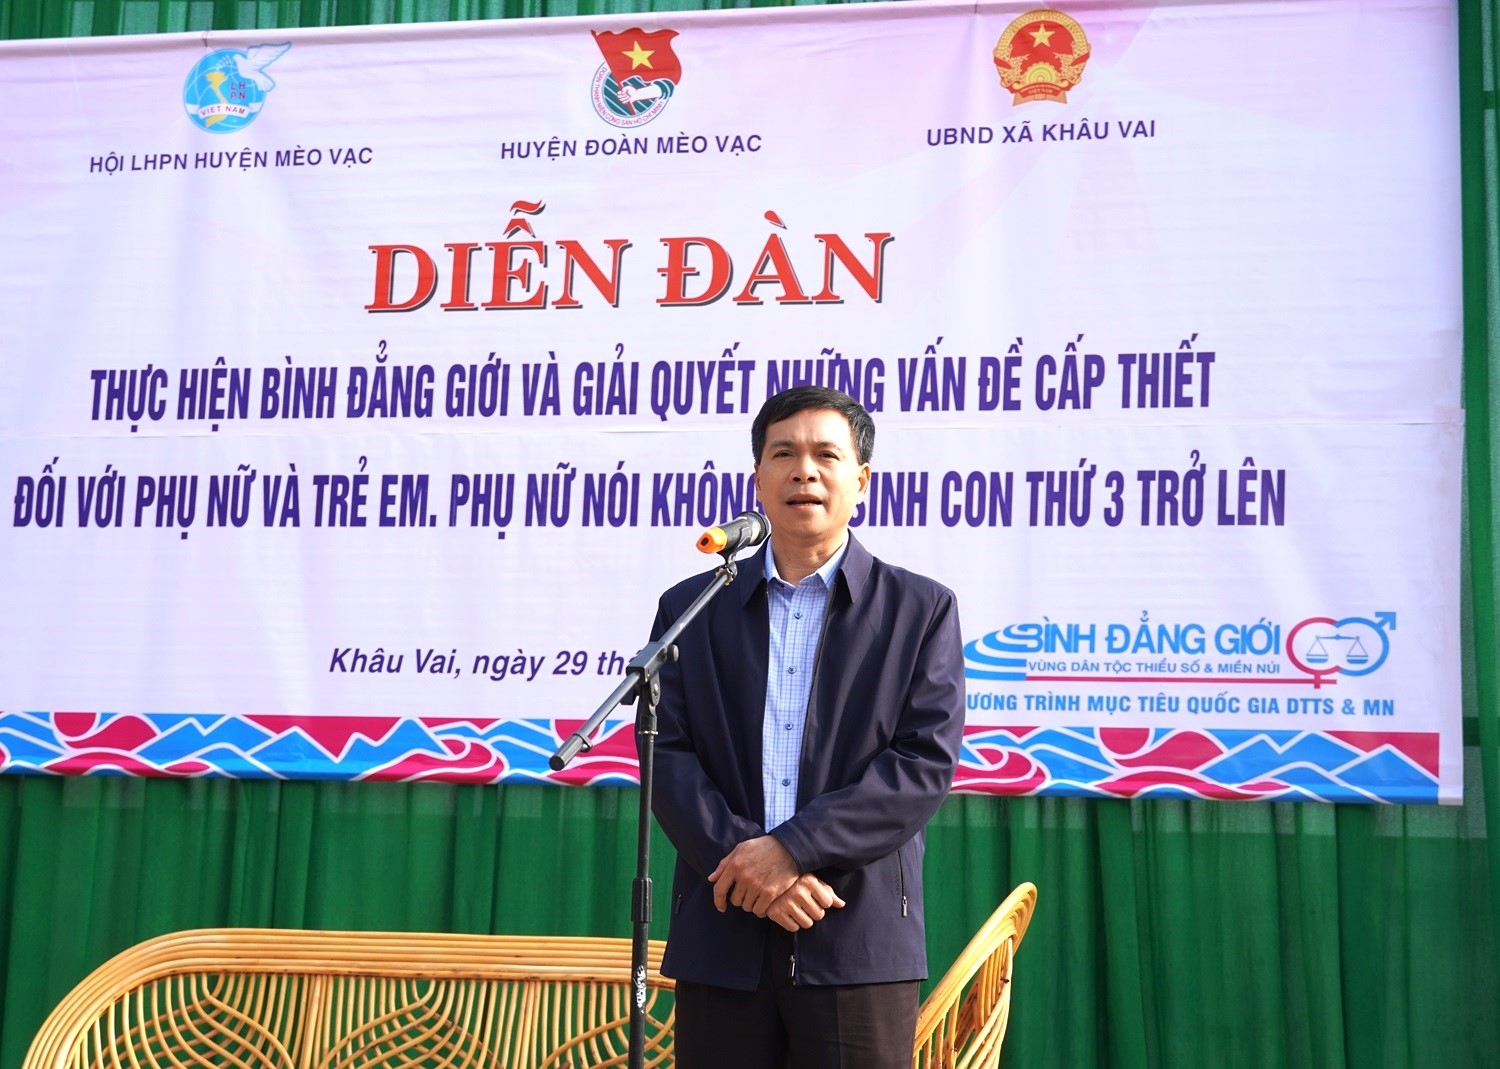 Đồng chí Phạm Văn Tú, Bí thư Huyện ủy Mèo Vạc (Hà Giang) phát biểu tại Diễn đàn.